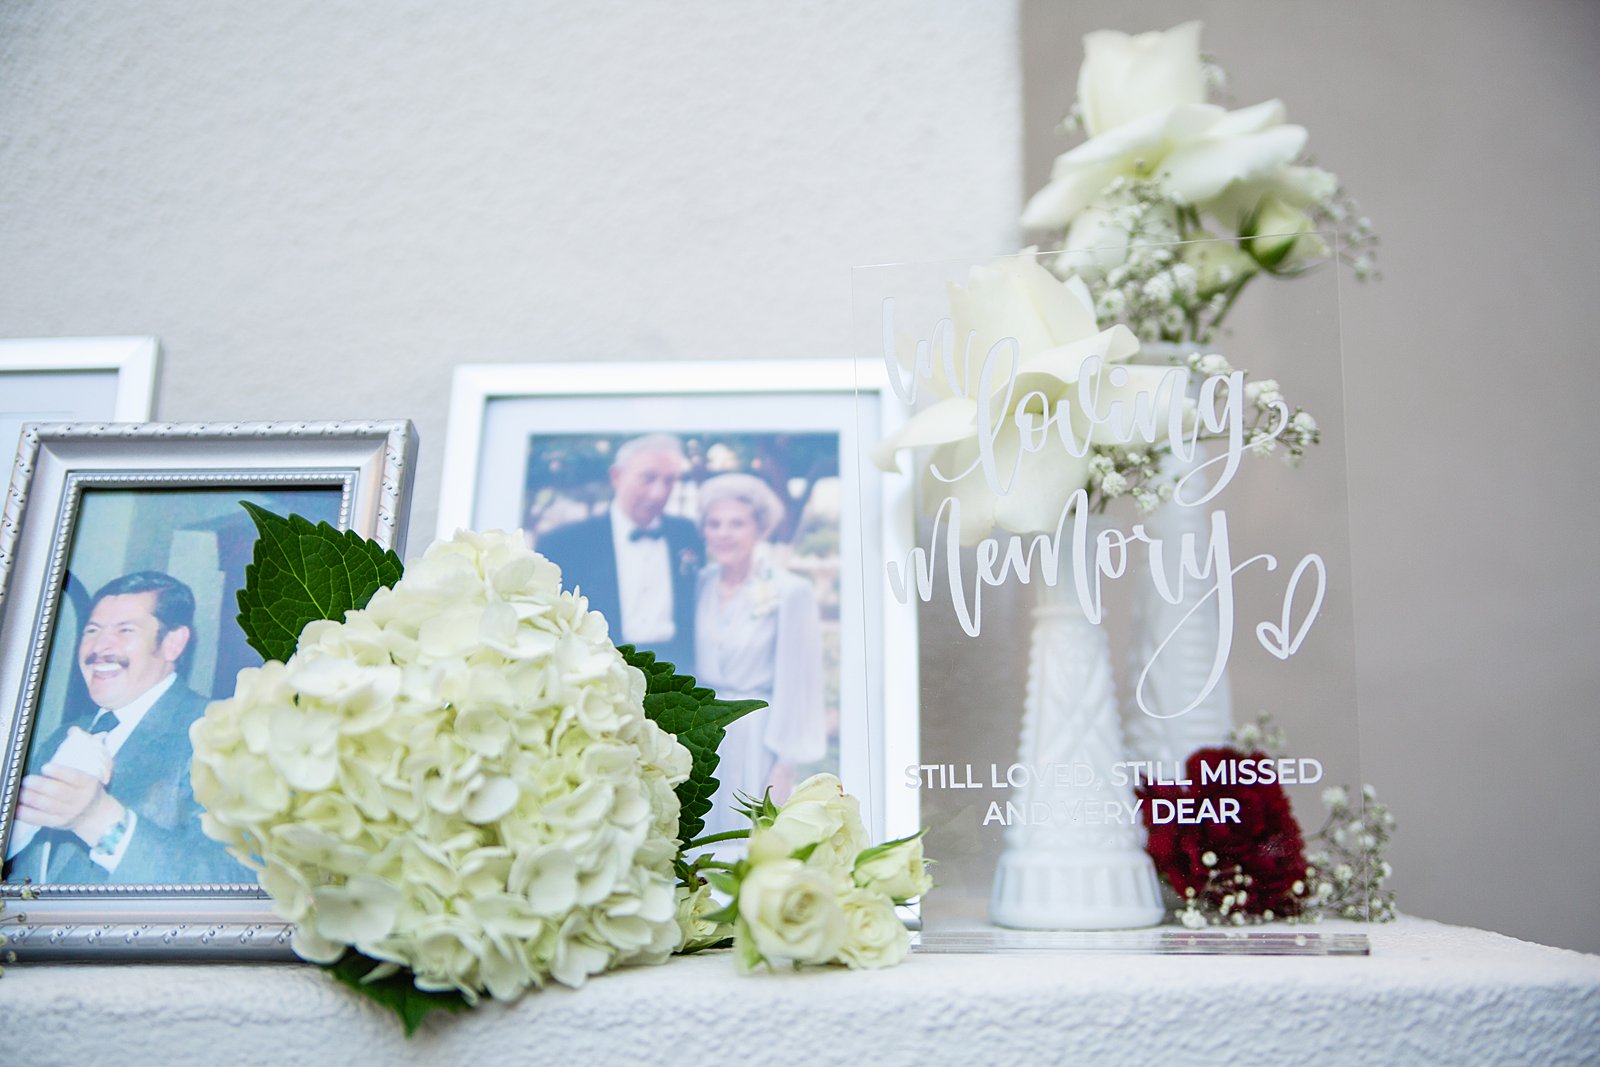 In loving memory mantle at SoHo63 wedding by Arizona wedding photographers PMA Photography.